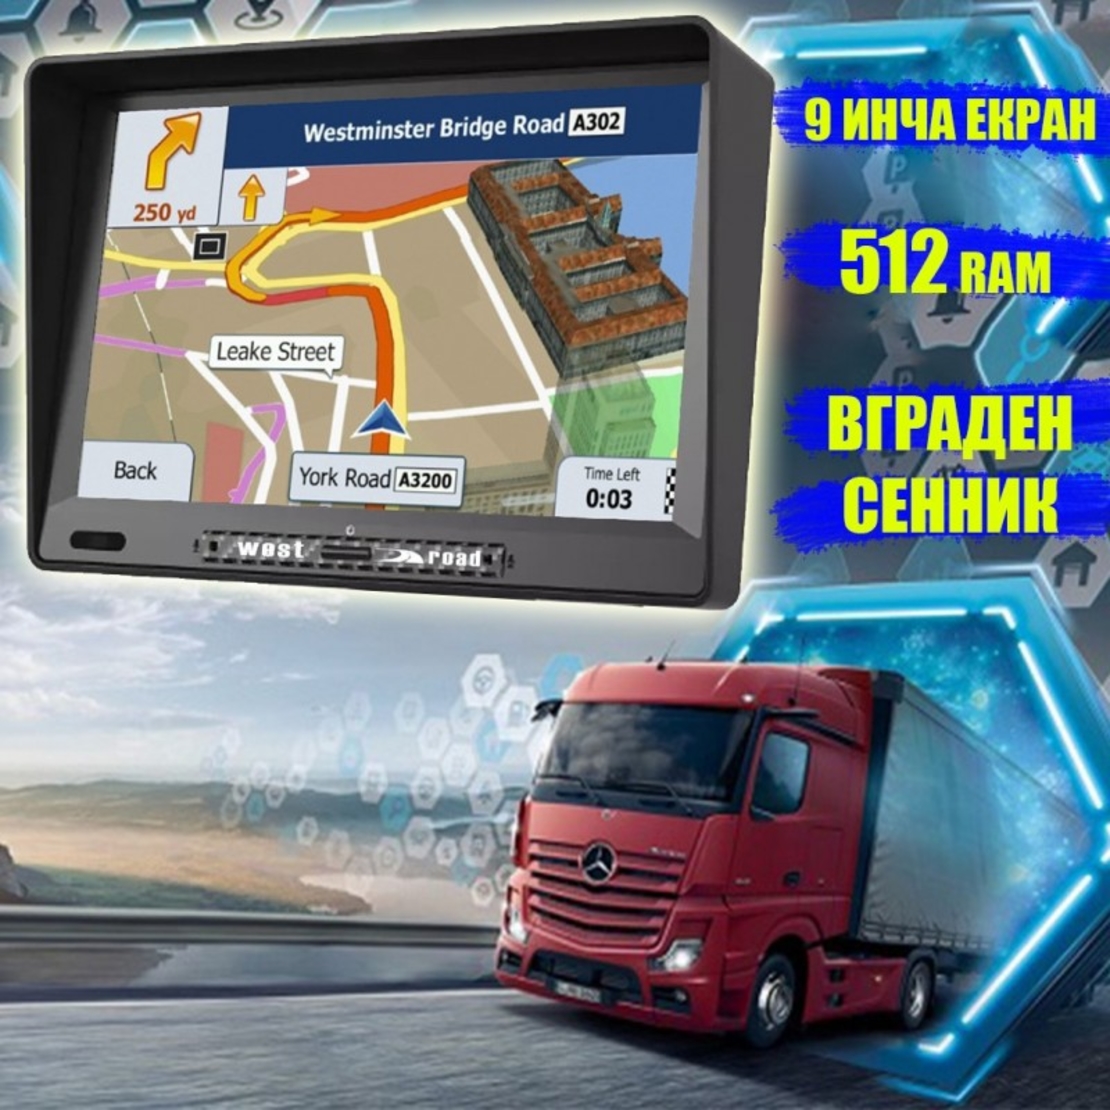 GPS Навигация West Road WR-S9512SS, 9 инча, 512 MB RAM, Вграден сенник